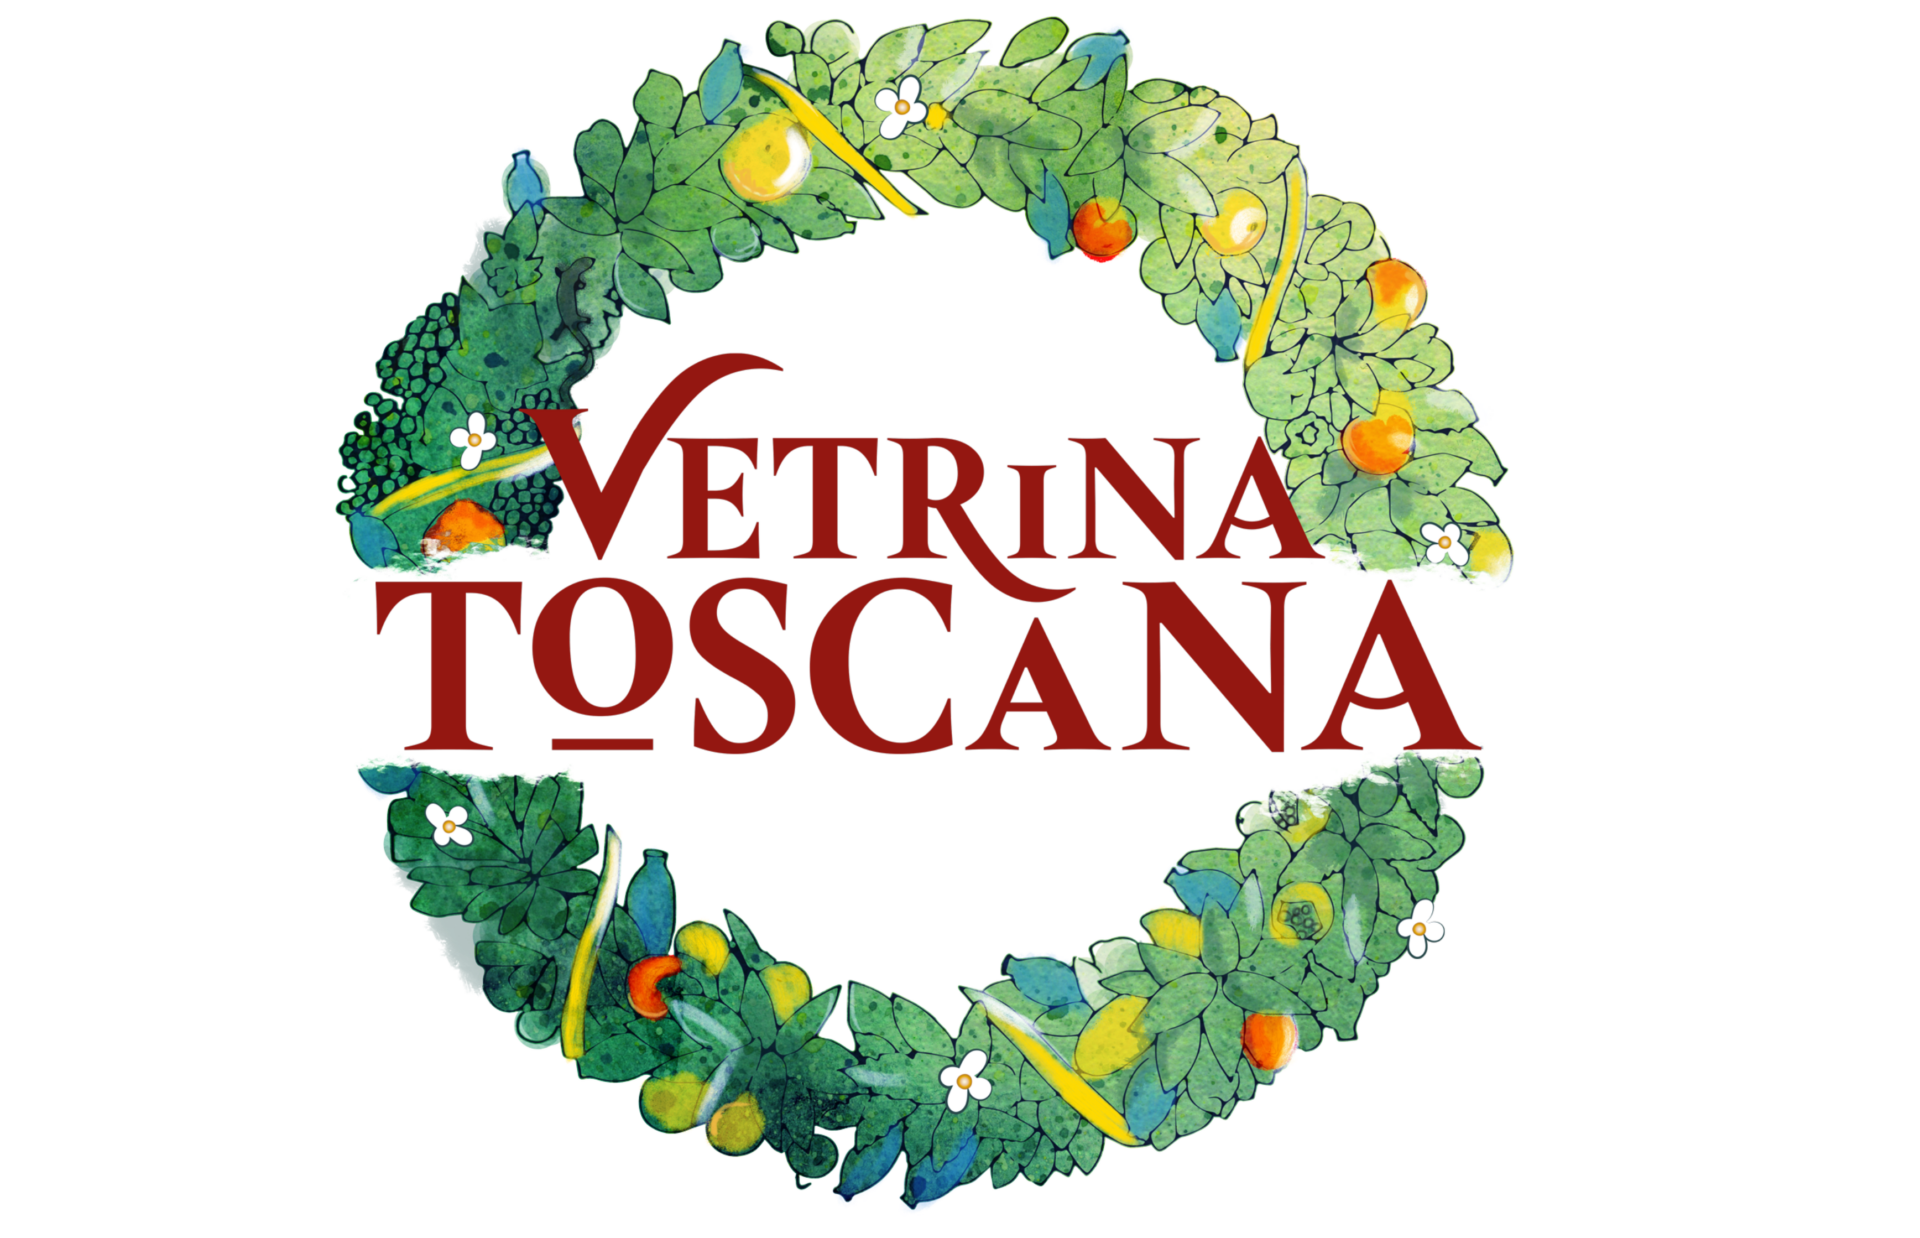 Vetrina toscana